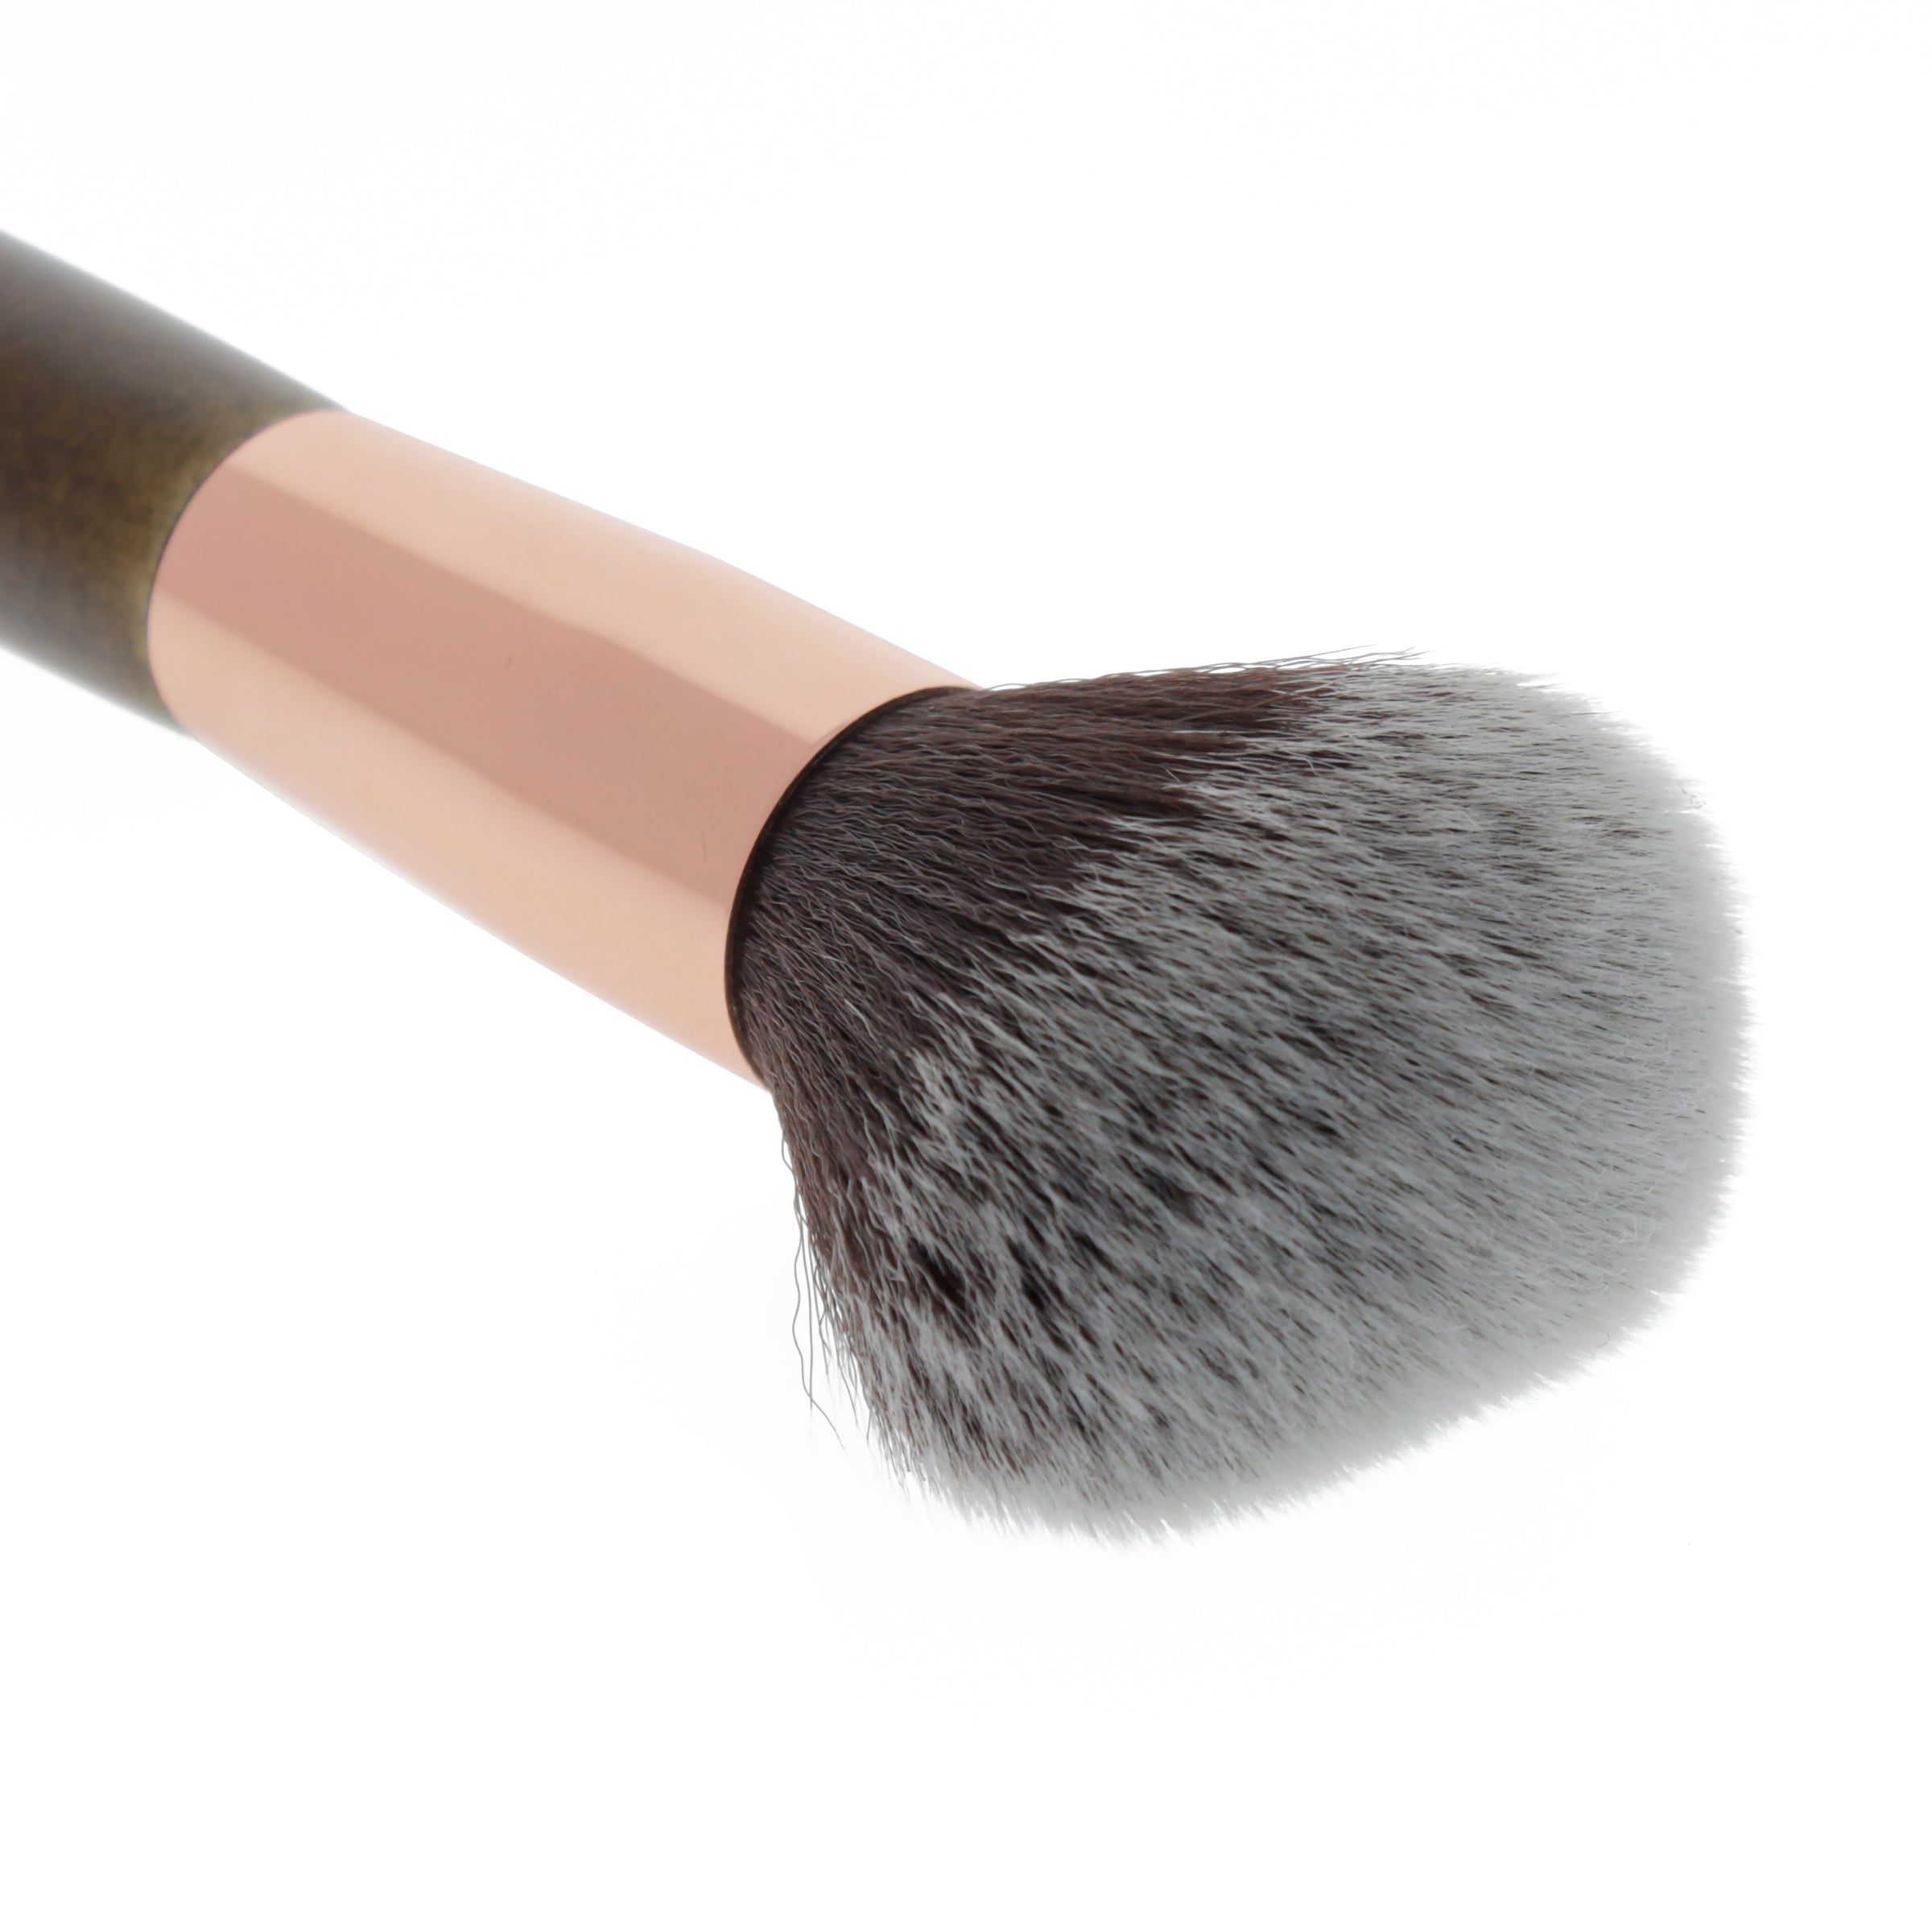 6PCS Make up Brushes Set Eye Shadow Liner Blusher Face Powder